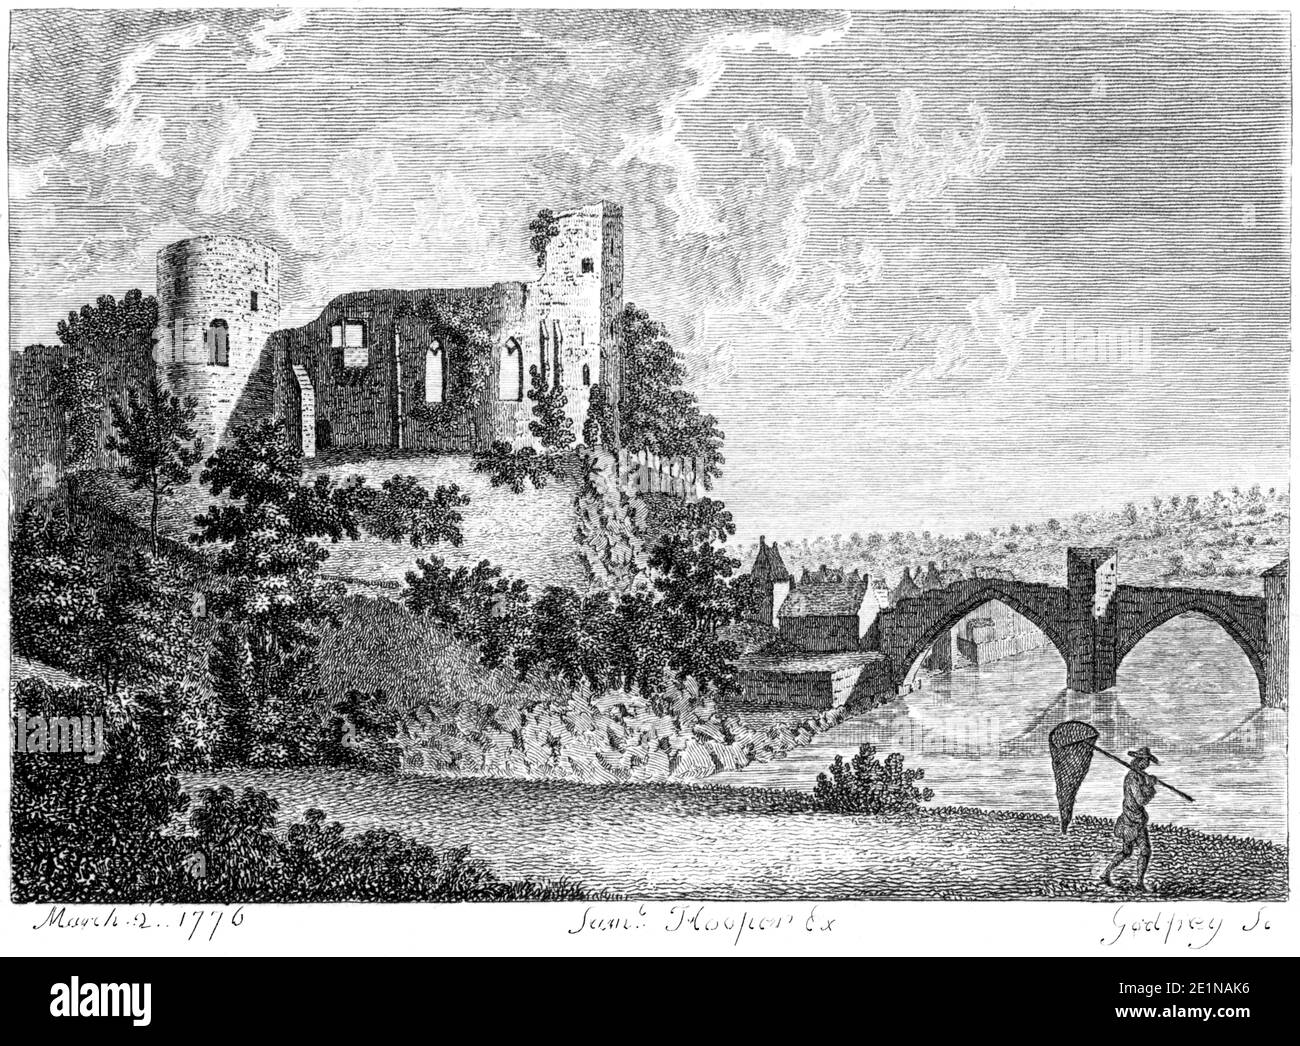 Une gravure du château de Bernards (château de Barnard) publiée le 2 mars 1776 numérisée à haute résolution d'un livre publié dans les années 1770. Banque D'Images